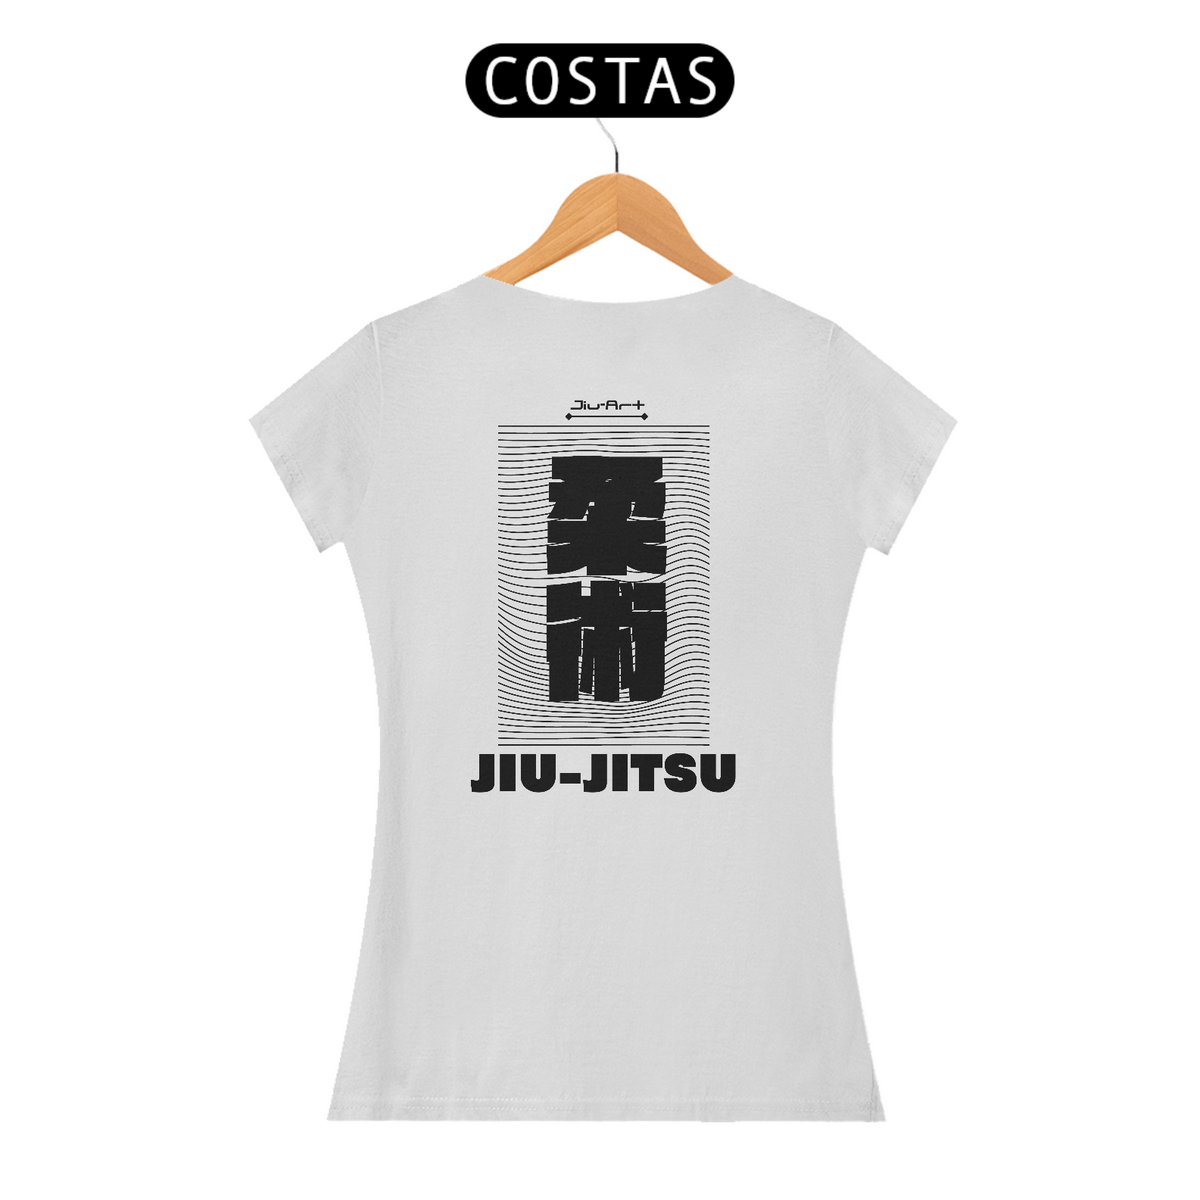 Nome do produto: Camisa Japan jiu-jitsu (Letra preta)